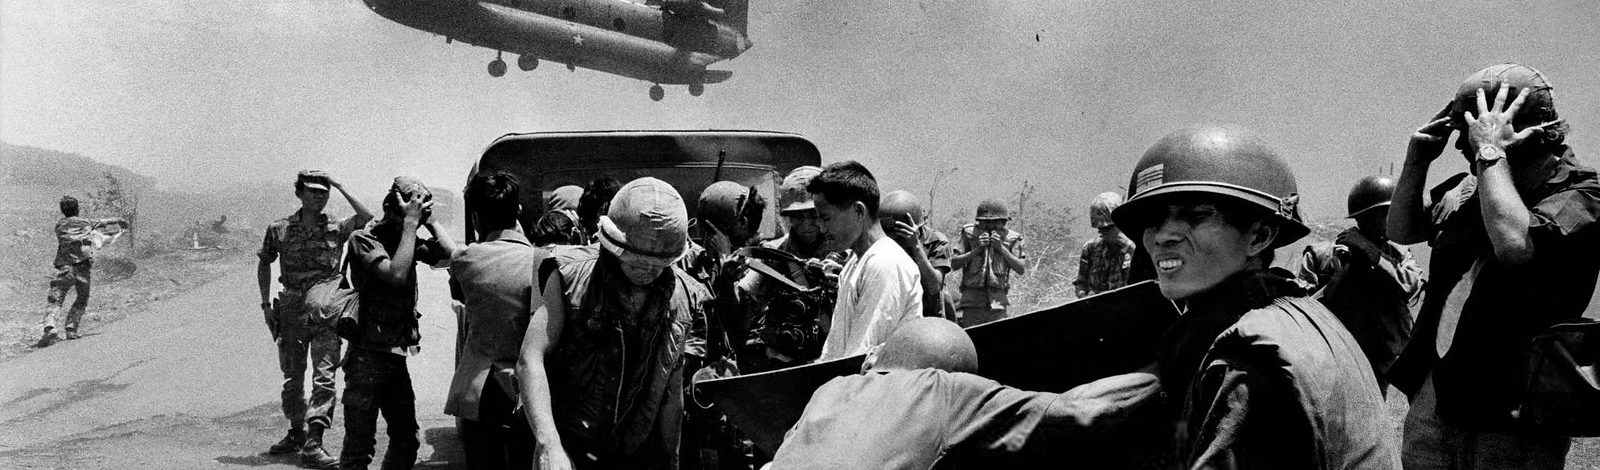 Vietnã: a força revolucionária responsável pelo maior desastre político e militar dos EUA